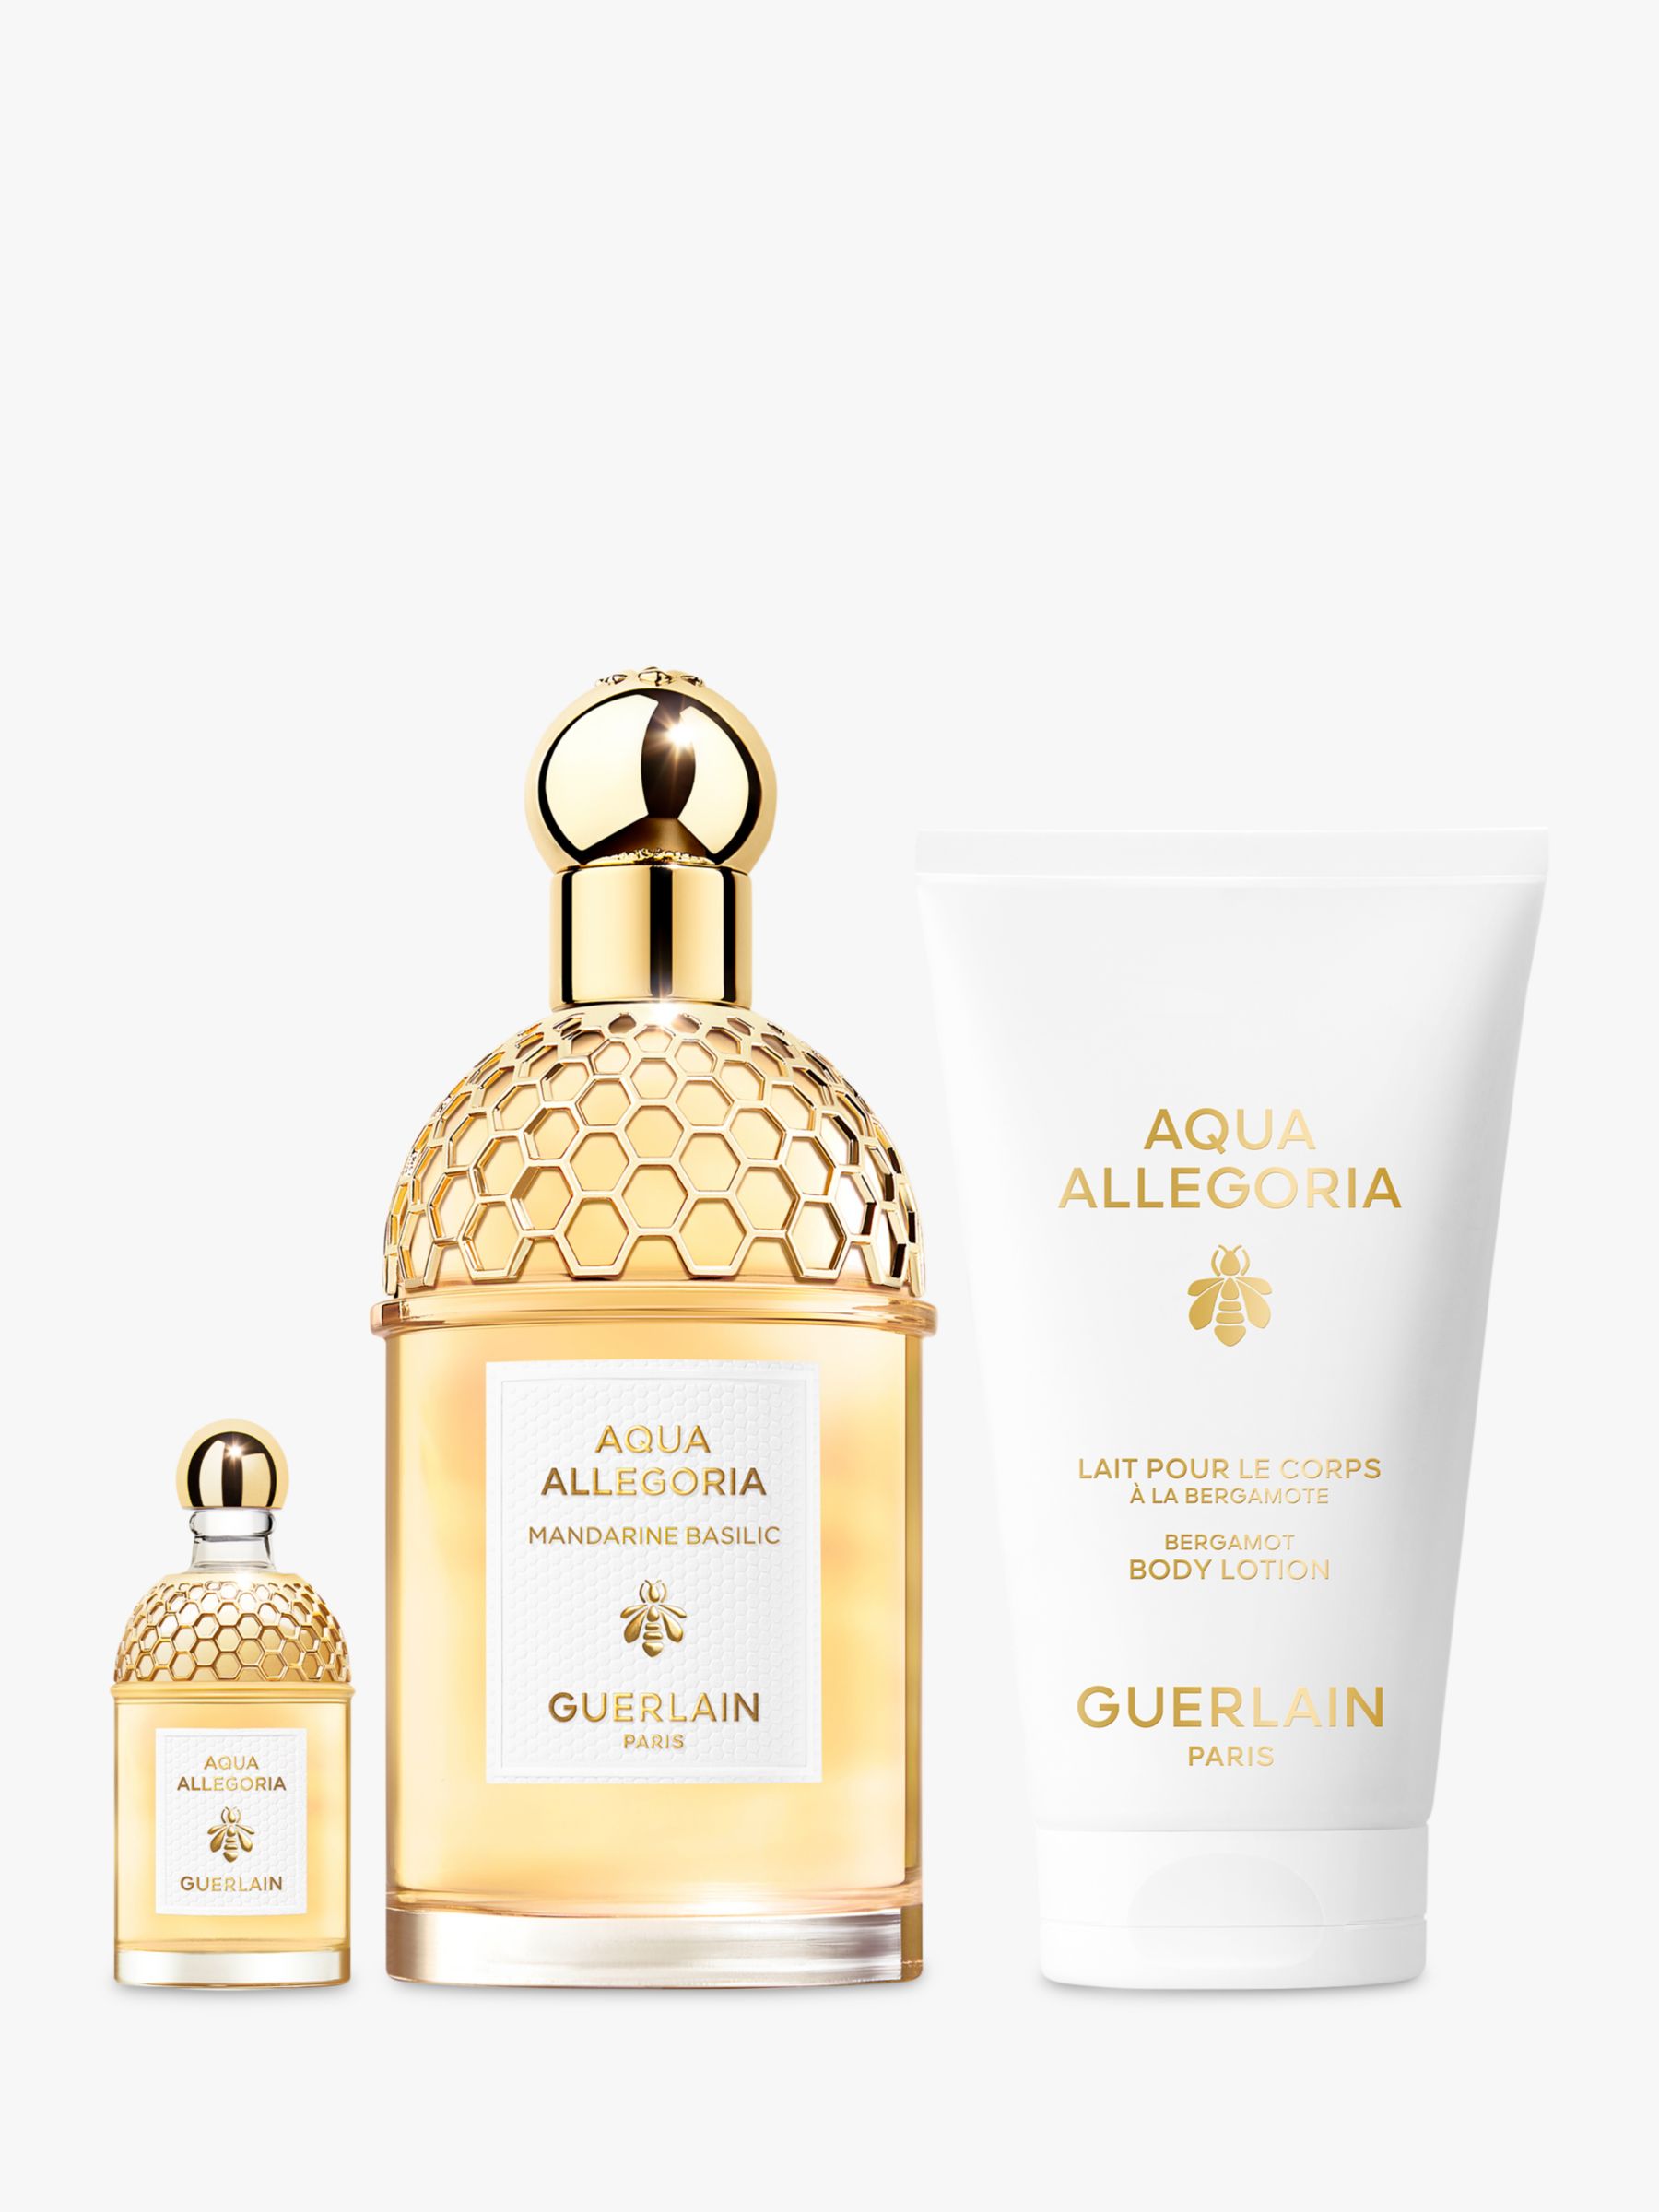 Guerlain Aqua Allegoria Mandarine Basilic Eau de Toilette 125ml Mother's Day Fragrance Gift Set 2